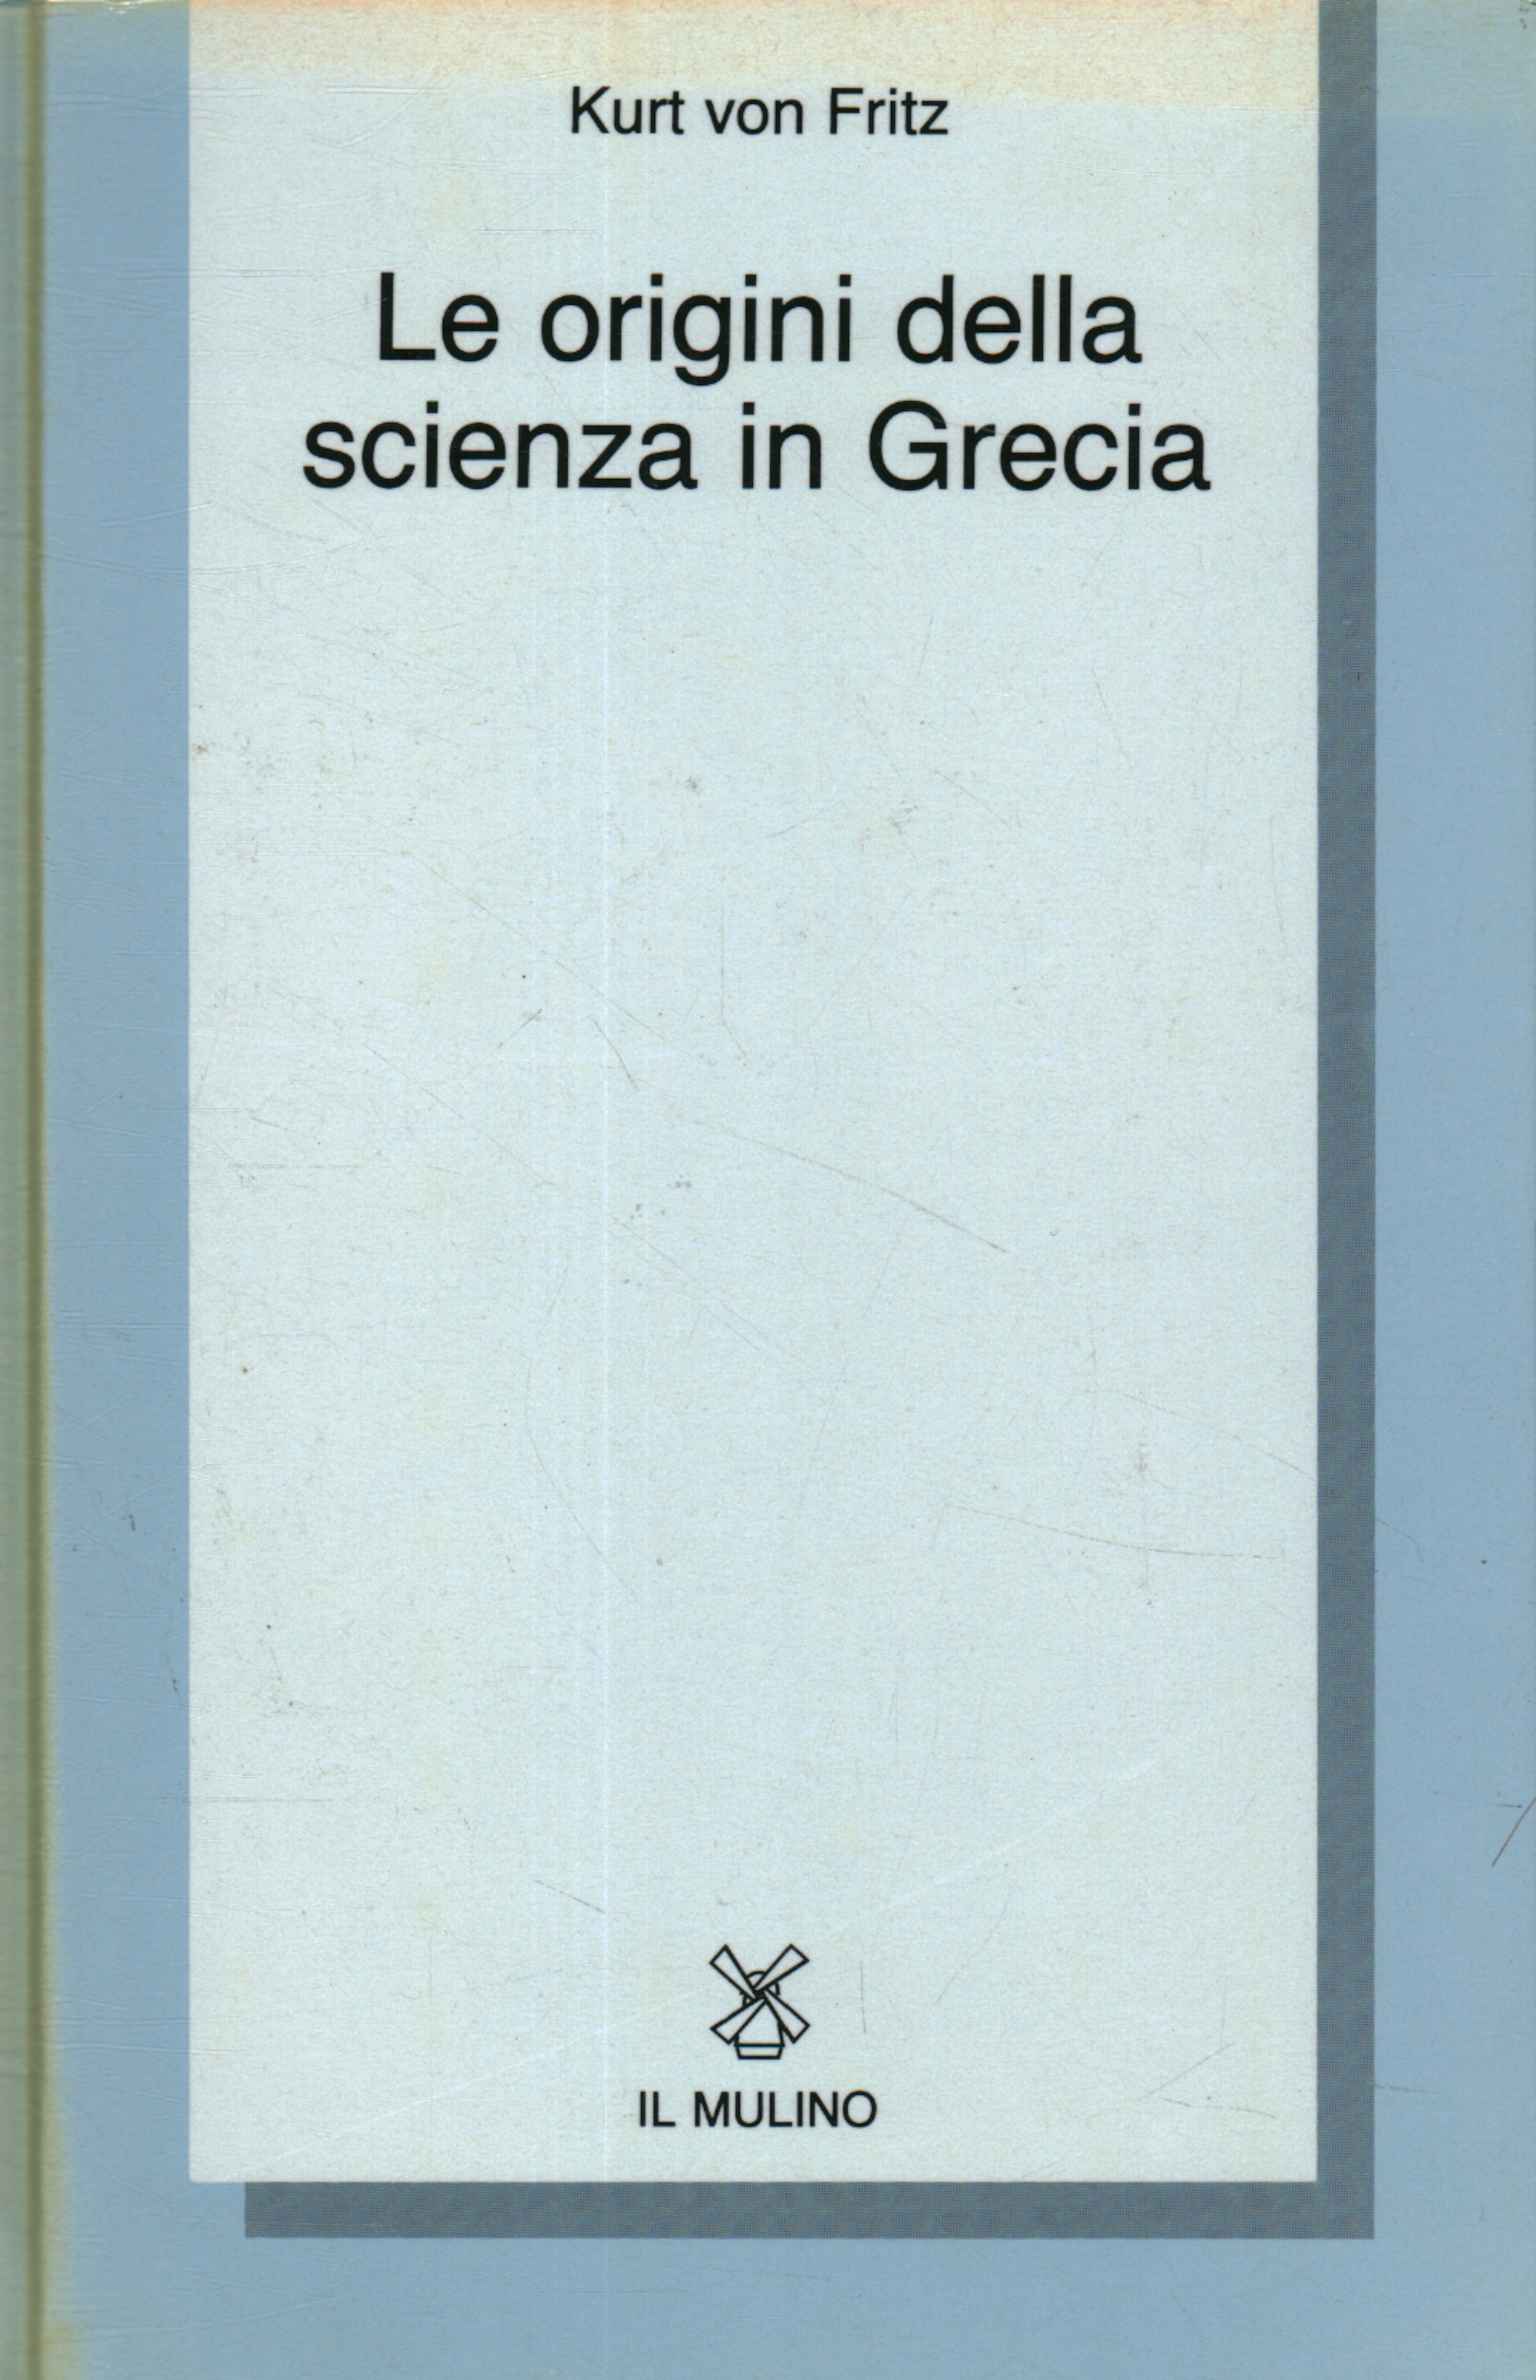 Los orígenes de la ciencia en Grecia